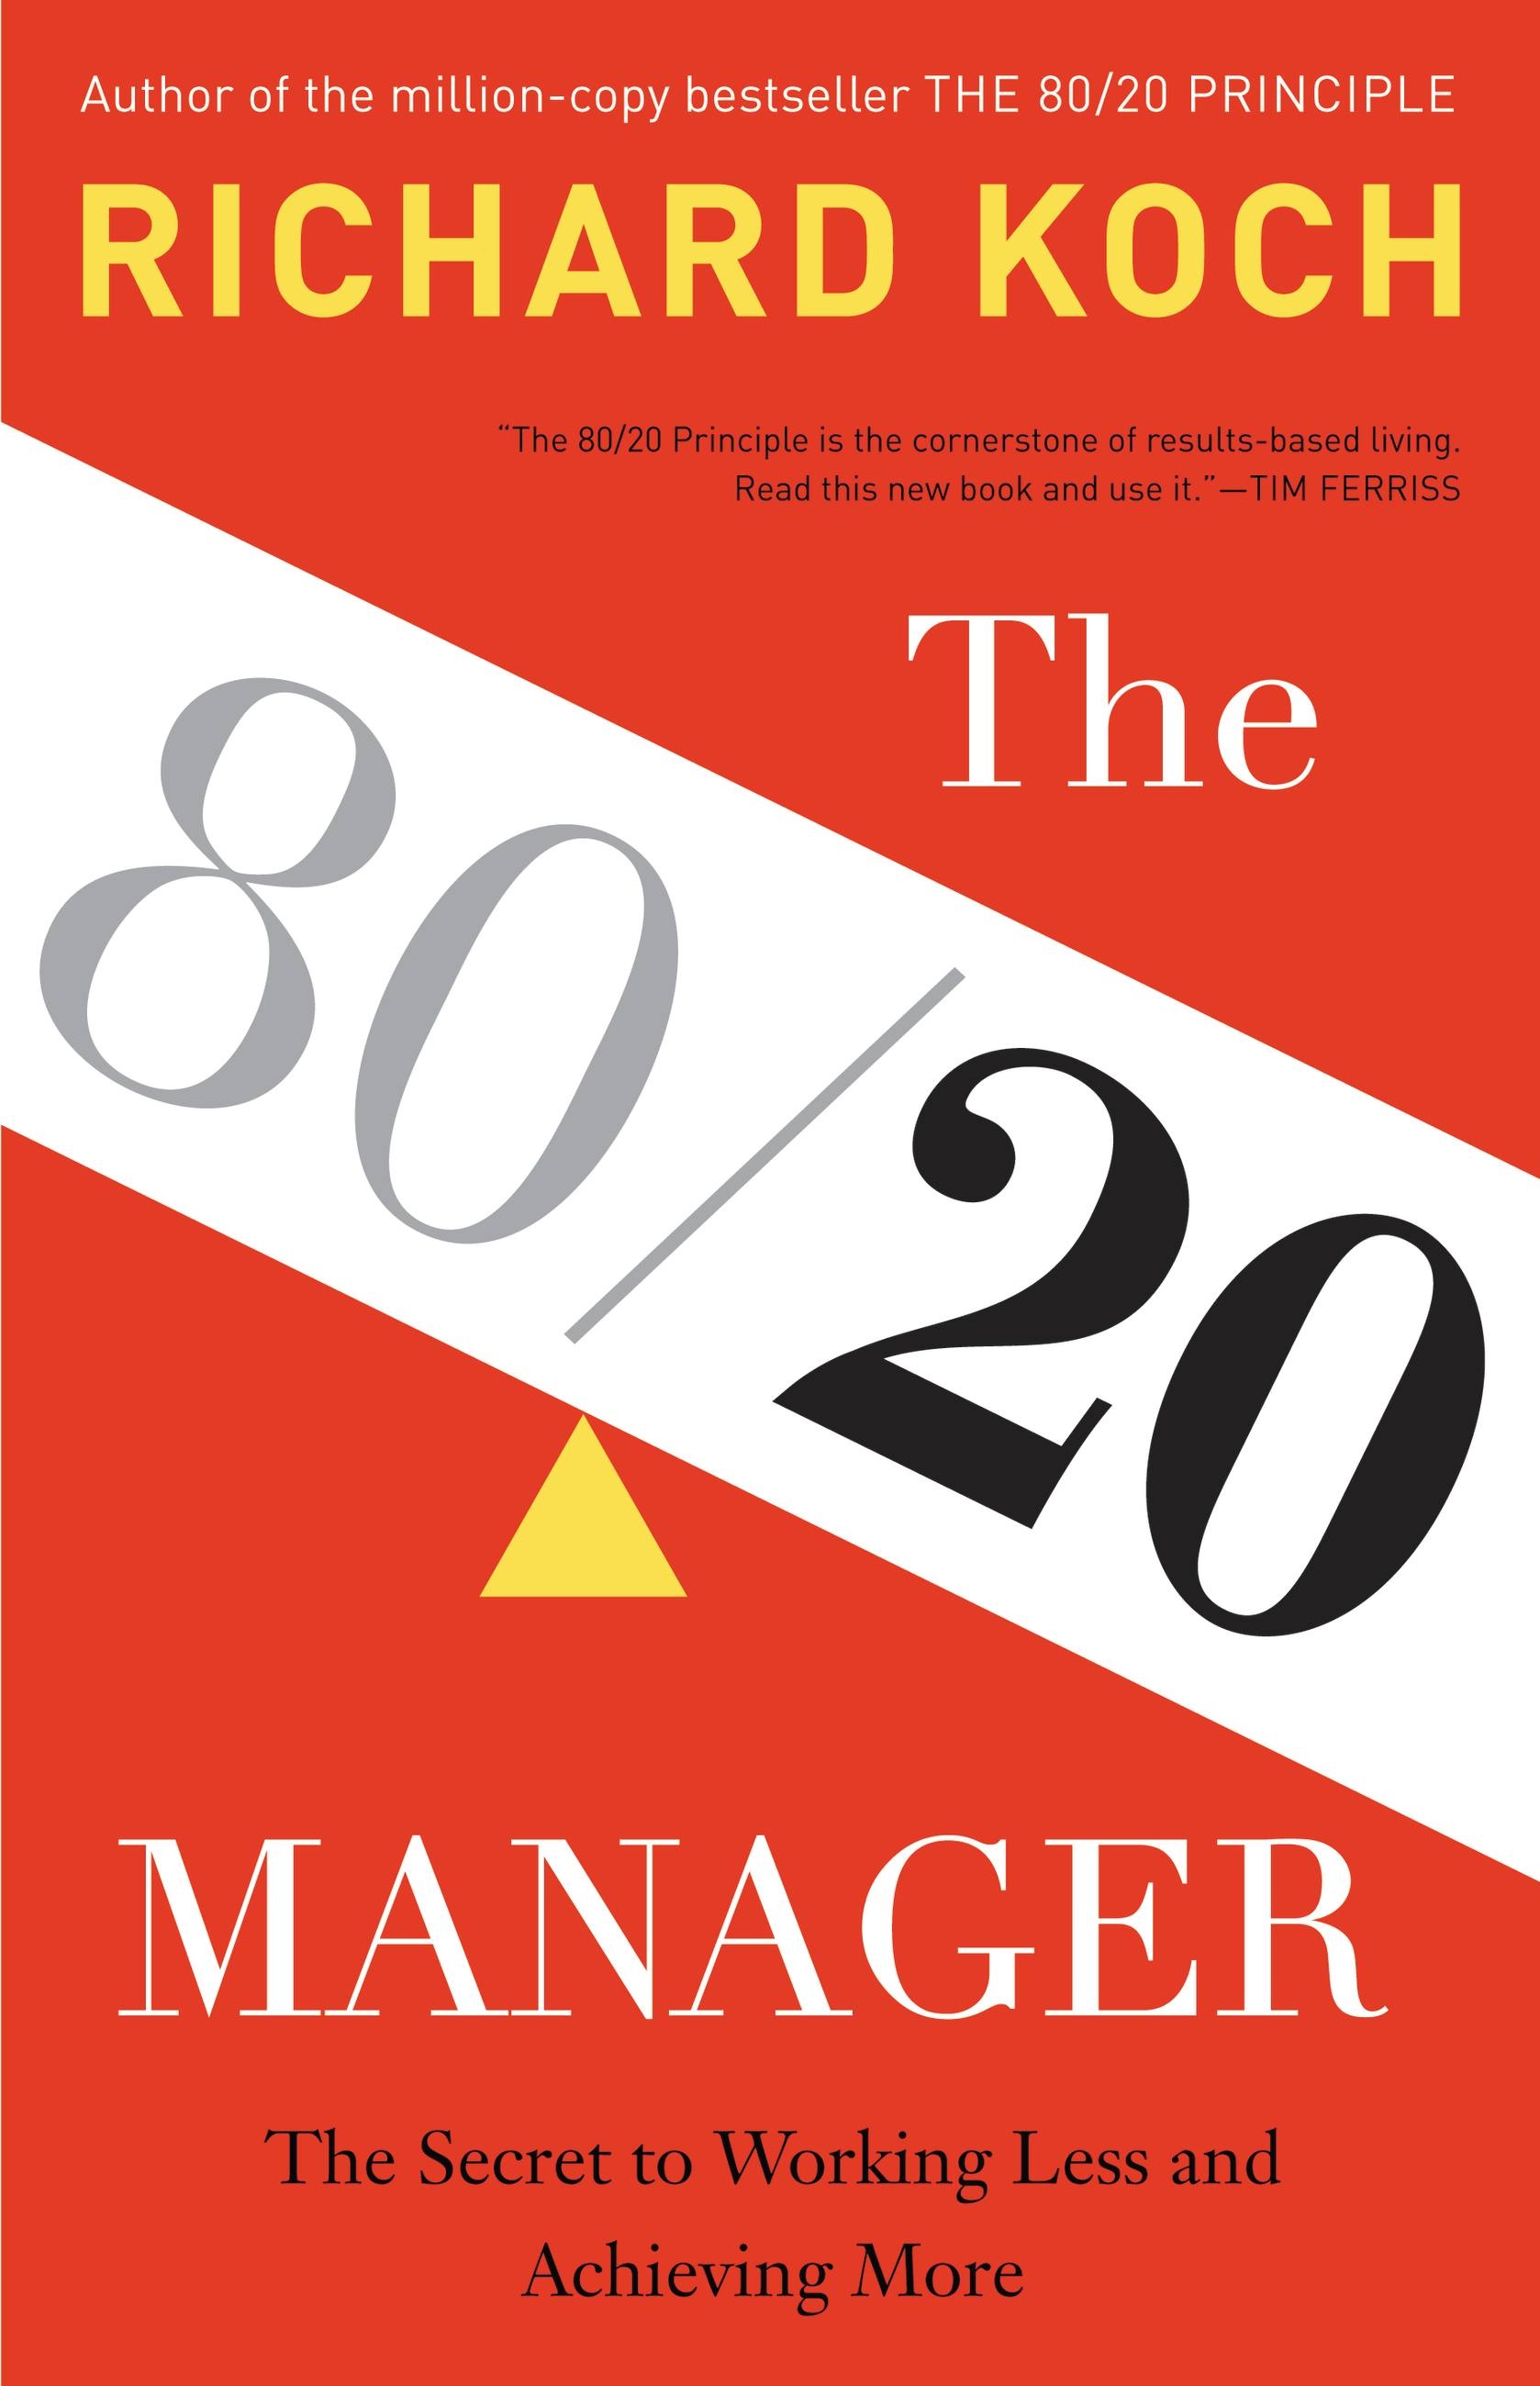 Скачать книга менеджер 80 20